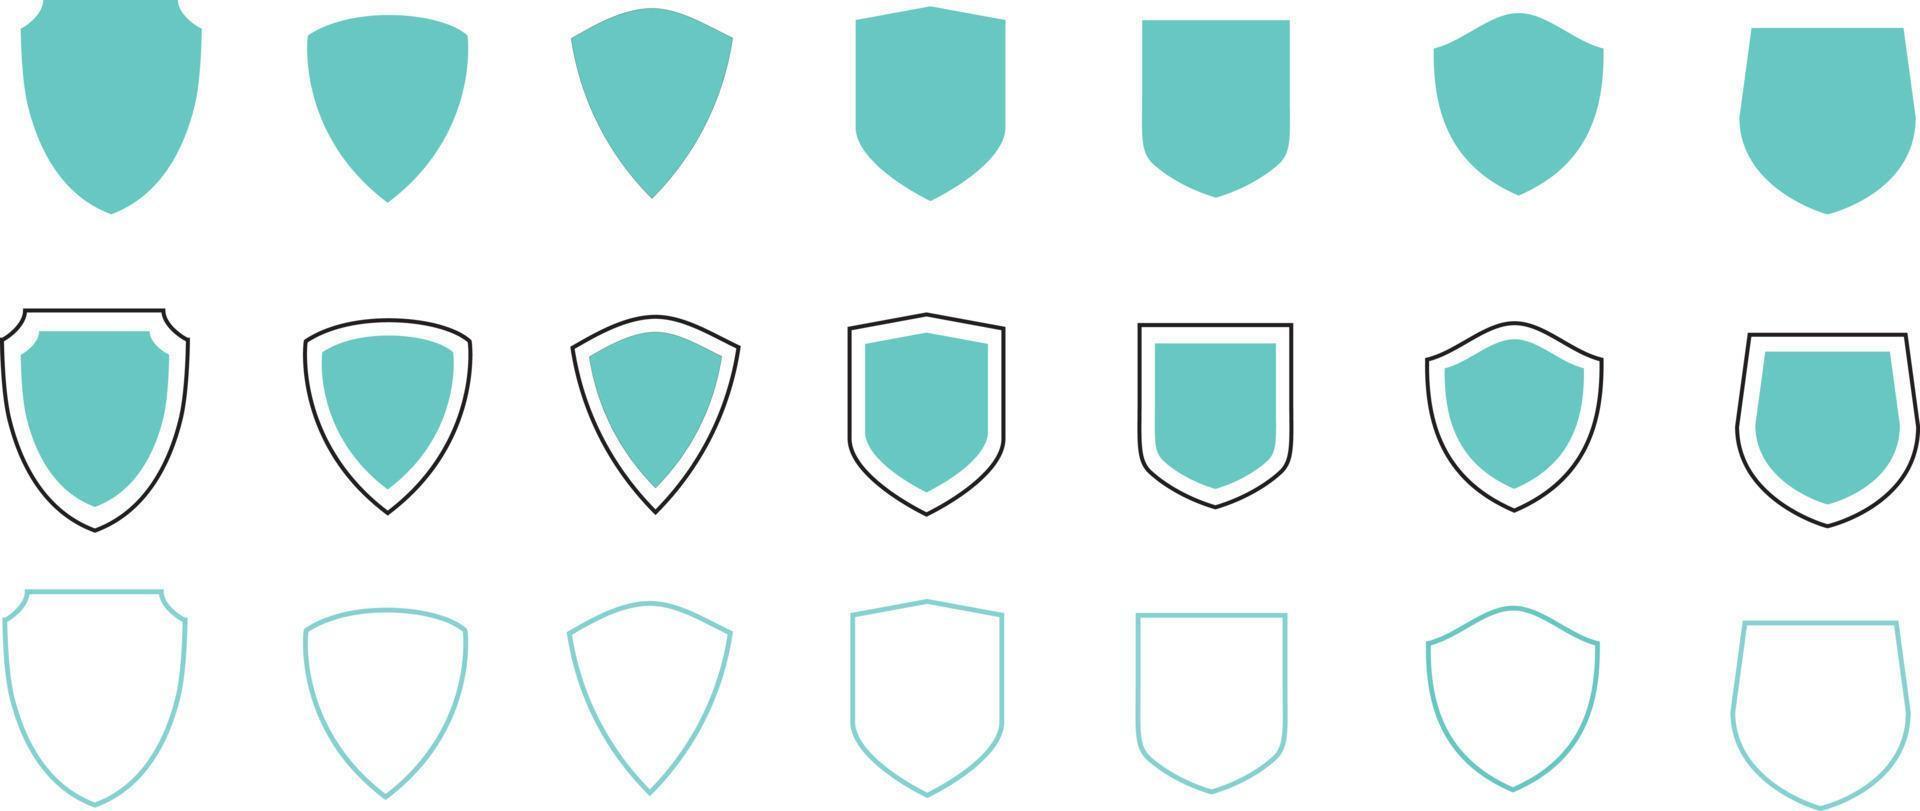 escudos vector Saco brazos conjunto señales símbolos pegatinas diseño elementos